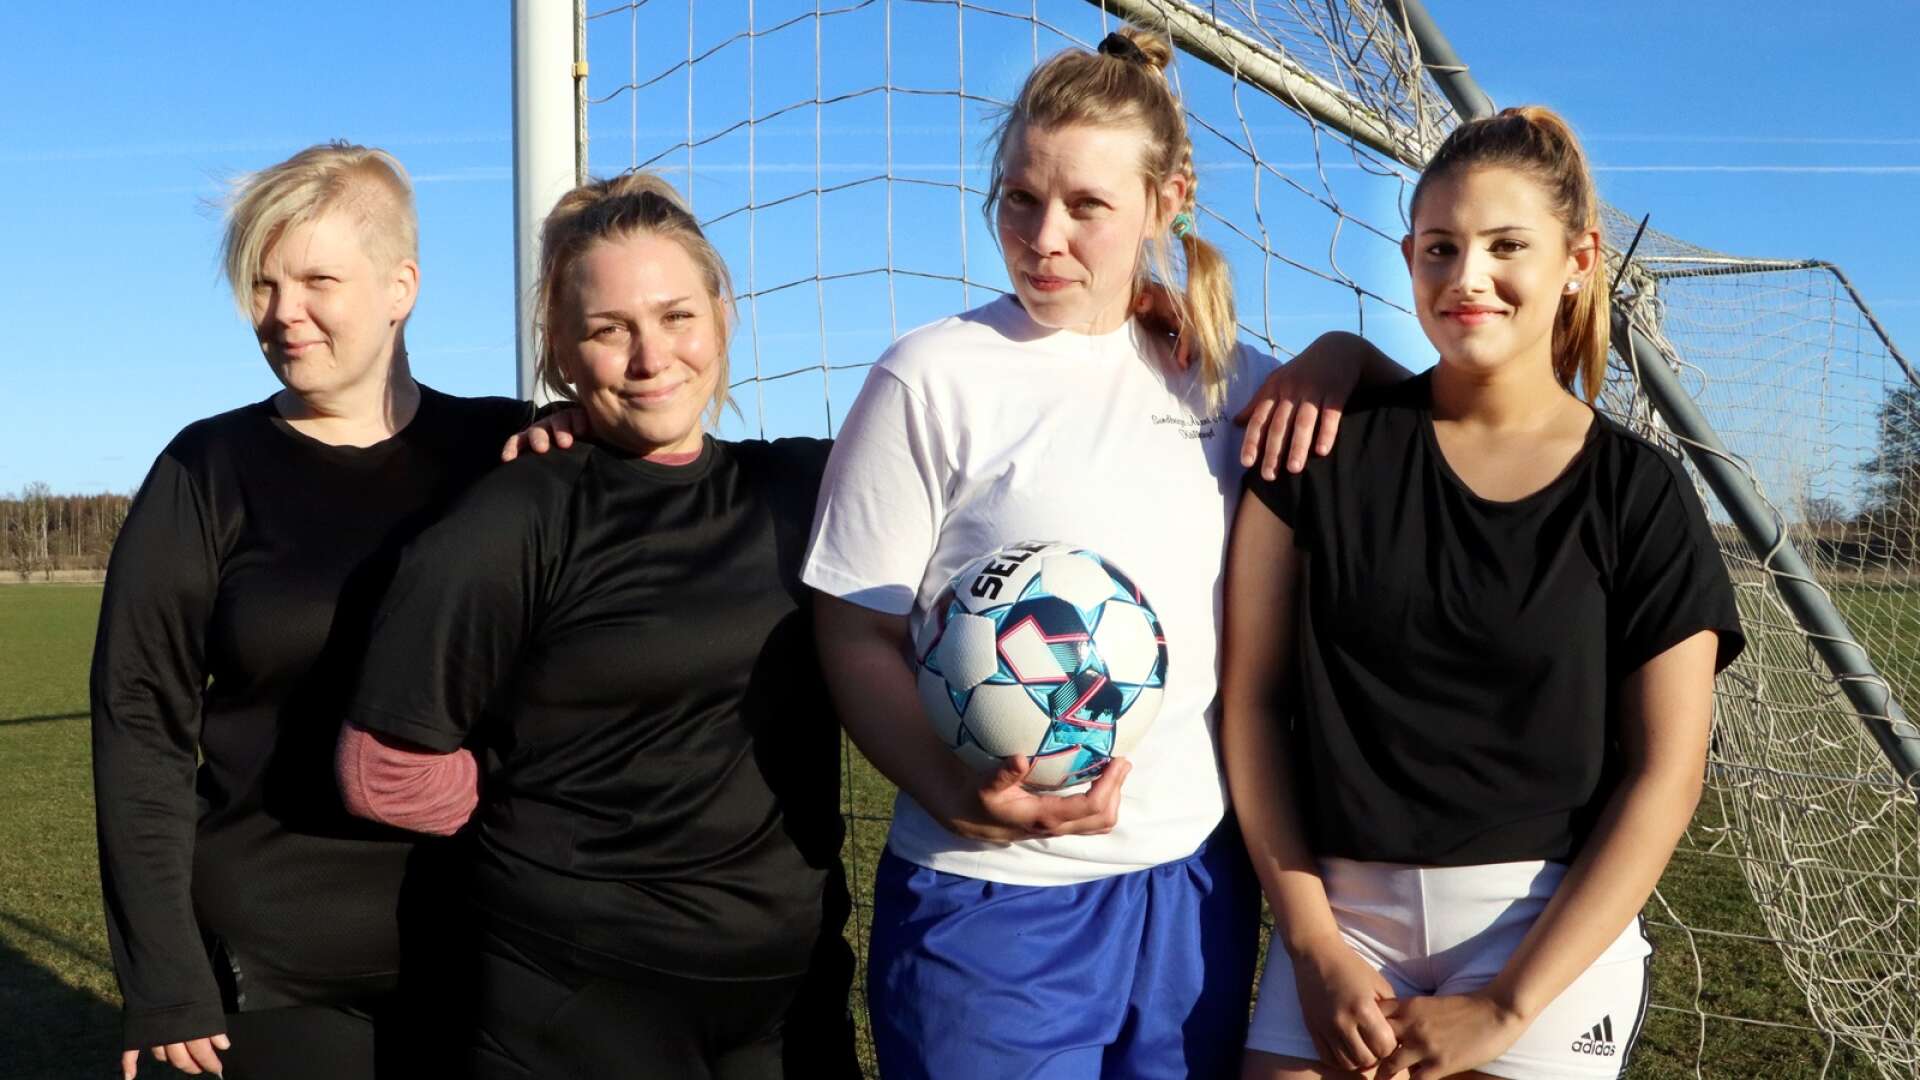 Utespelarna Christina Bodling och Elin Zlatkovic har omskolats till målvakter samt nya spelare från Korsberga IF är Petra Nilsson och Lova Leijonmarck.